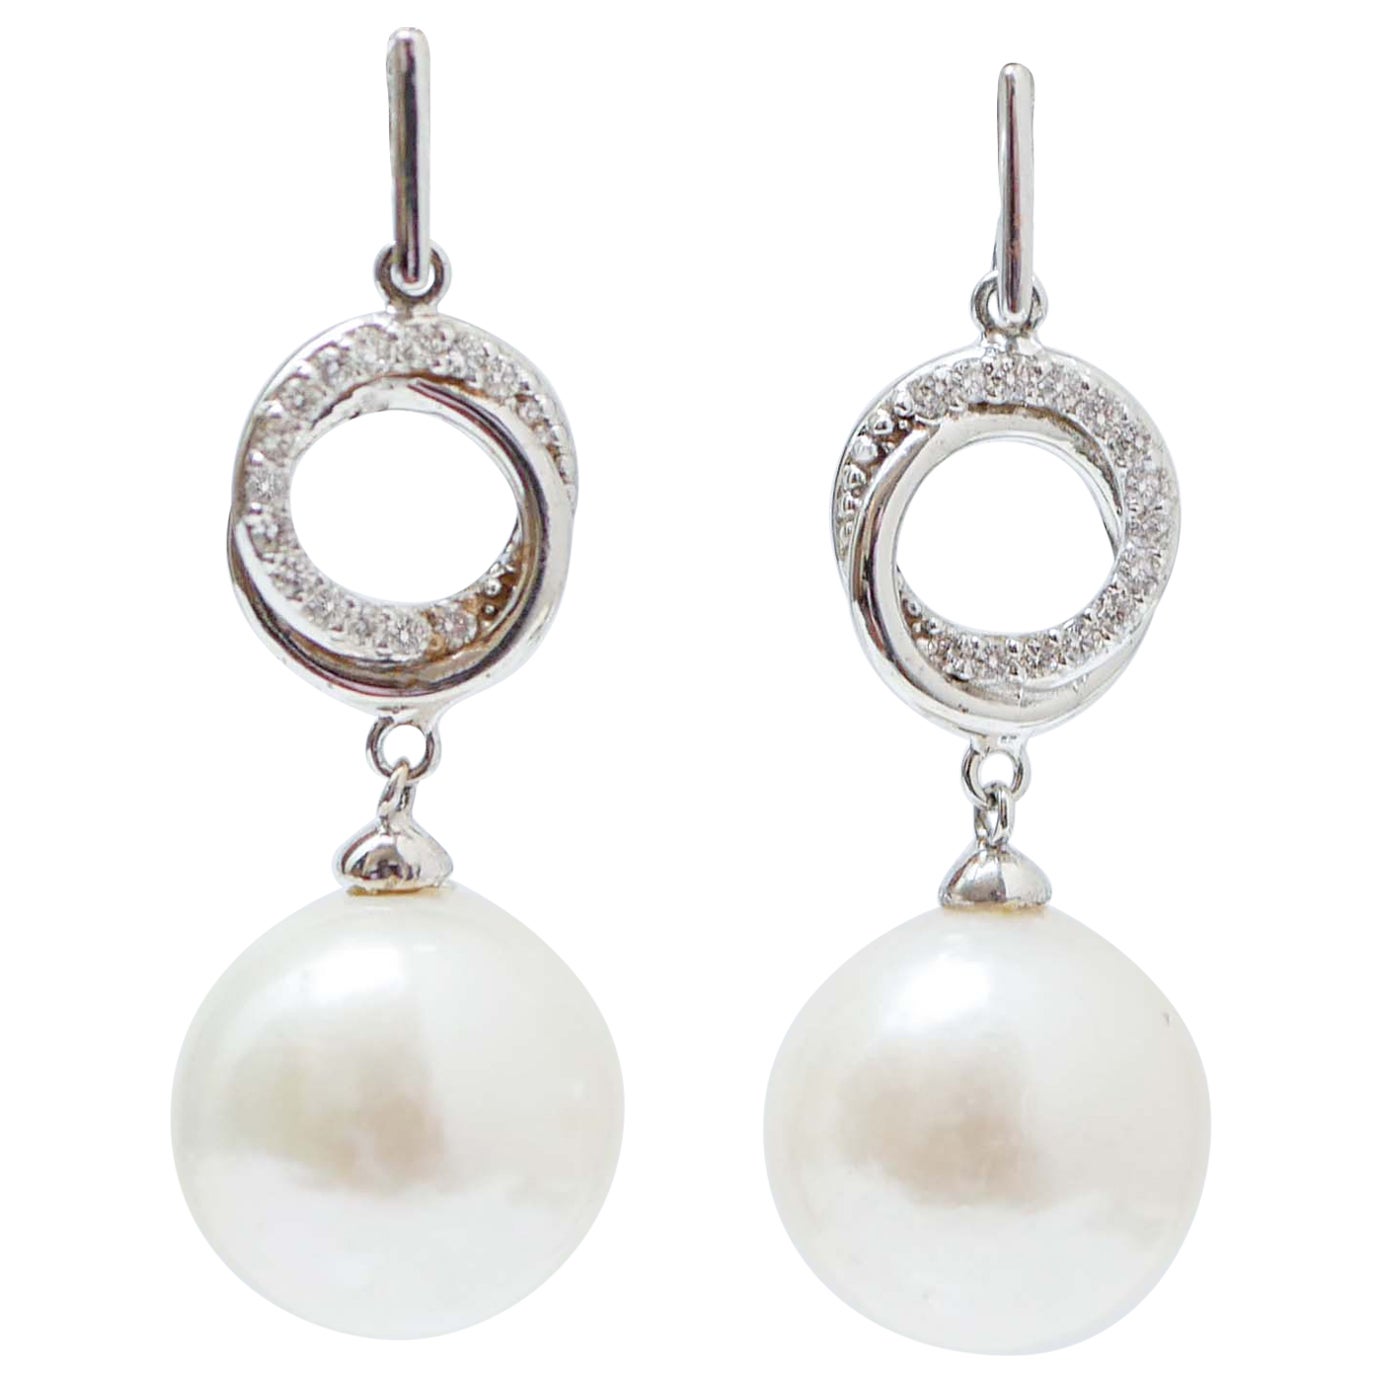 White Pearls, Diamonds, 18 Karat White Gold Earrings. For Sale